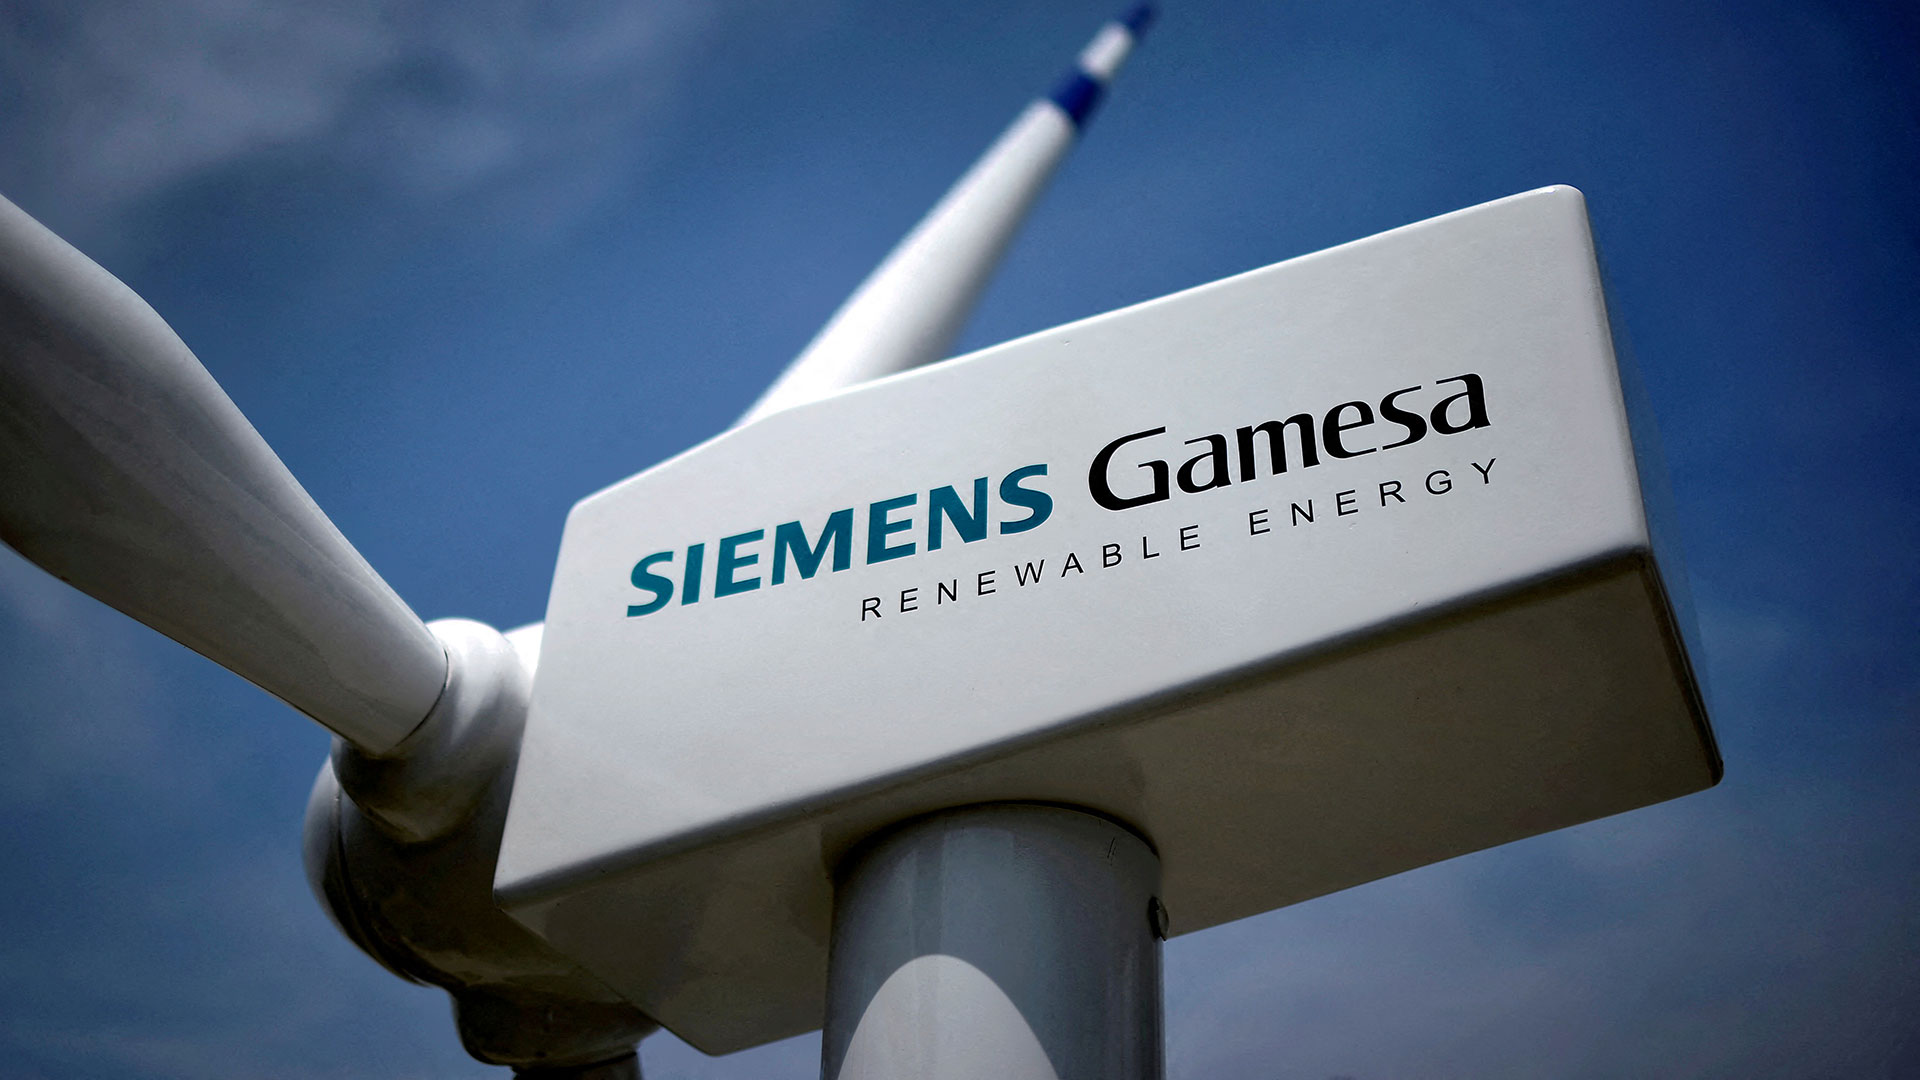 Siemens Energy: Unerwartet hohe Verluste bei Windkrafttochter Siemens Gamesa. Doch es gibt Grund zur Hoffnung (Foto: Vincent West/REUTERS)